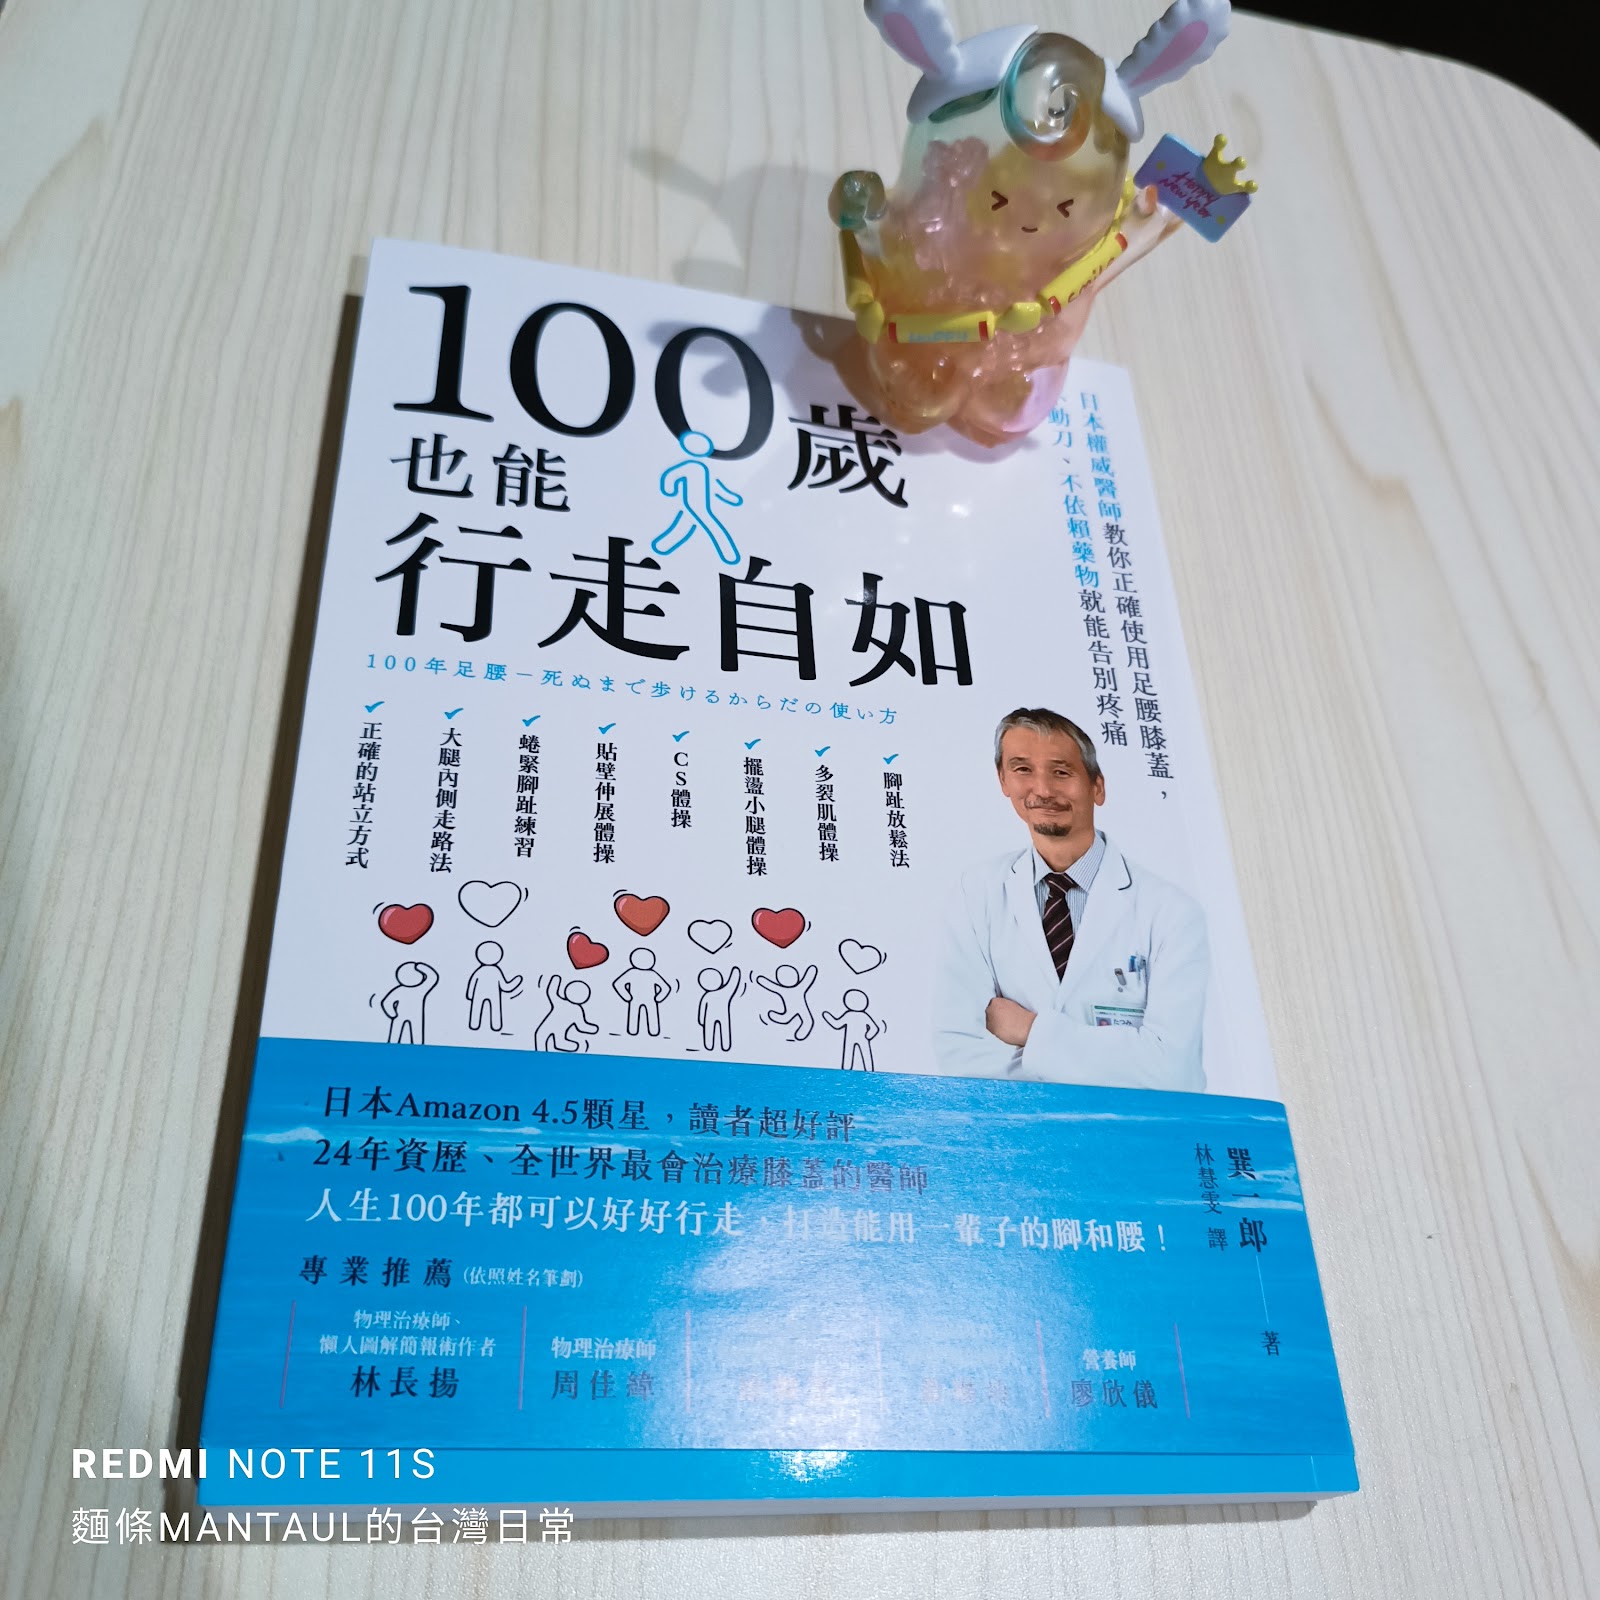 書籍閱讀分享:《100歲也能行走自如:日本權威醫師教你正確使